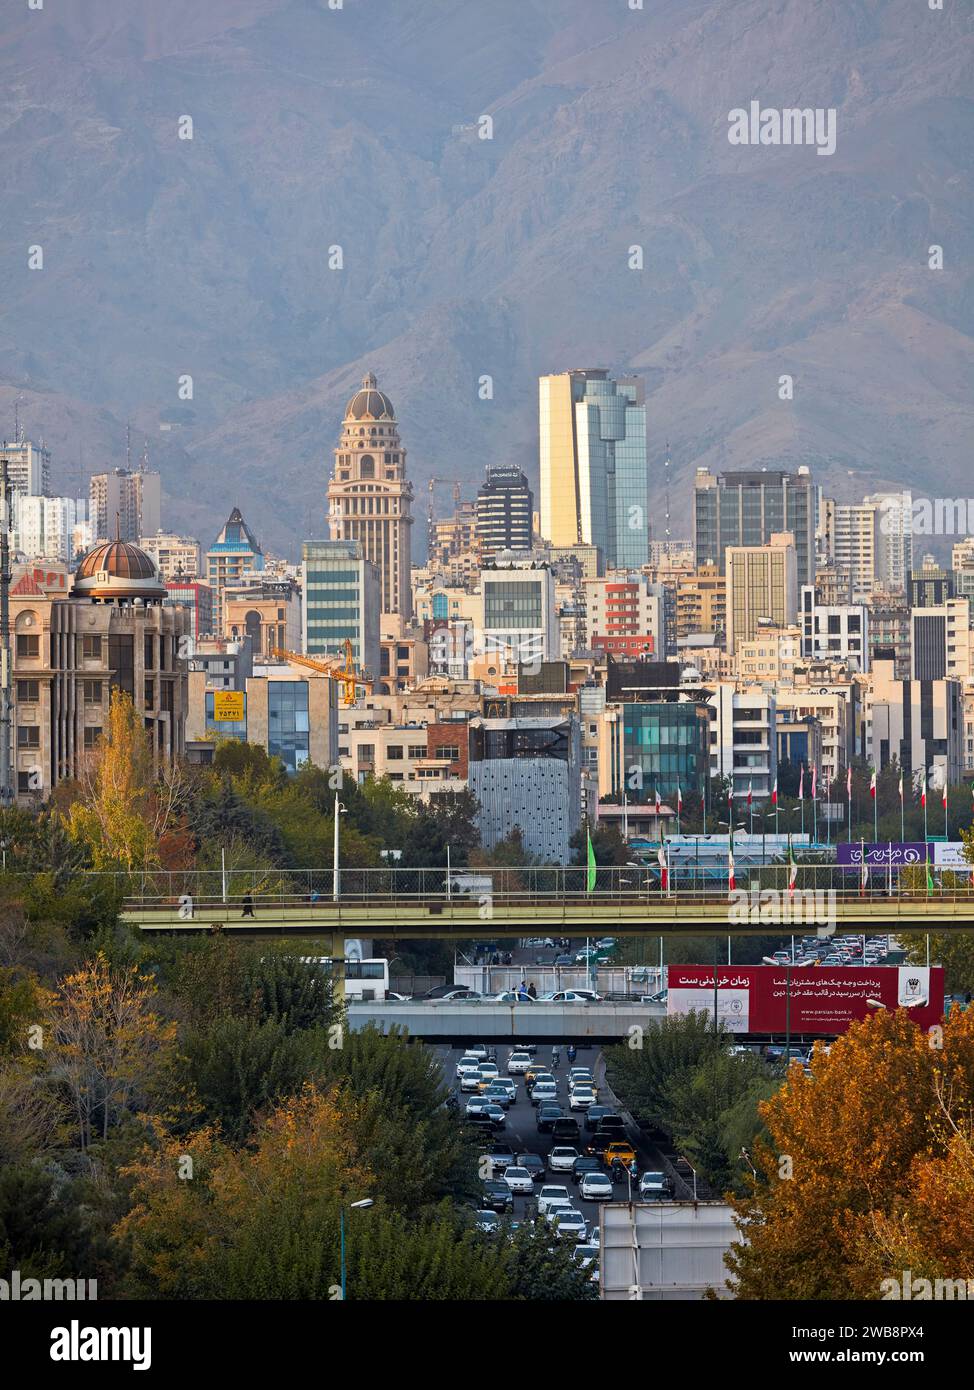 Vue de la partie nord de la ville de Téhéran depuis le pont de Tabiat. Téhéran, Iran. Banque D'Images